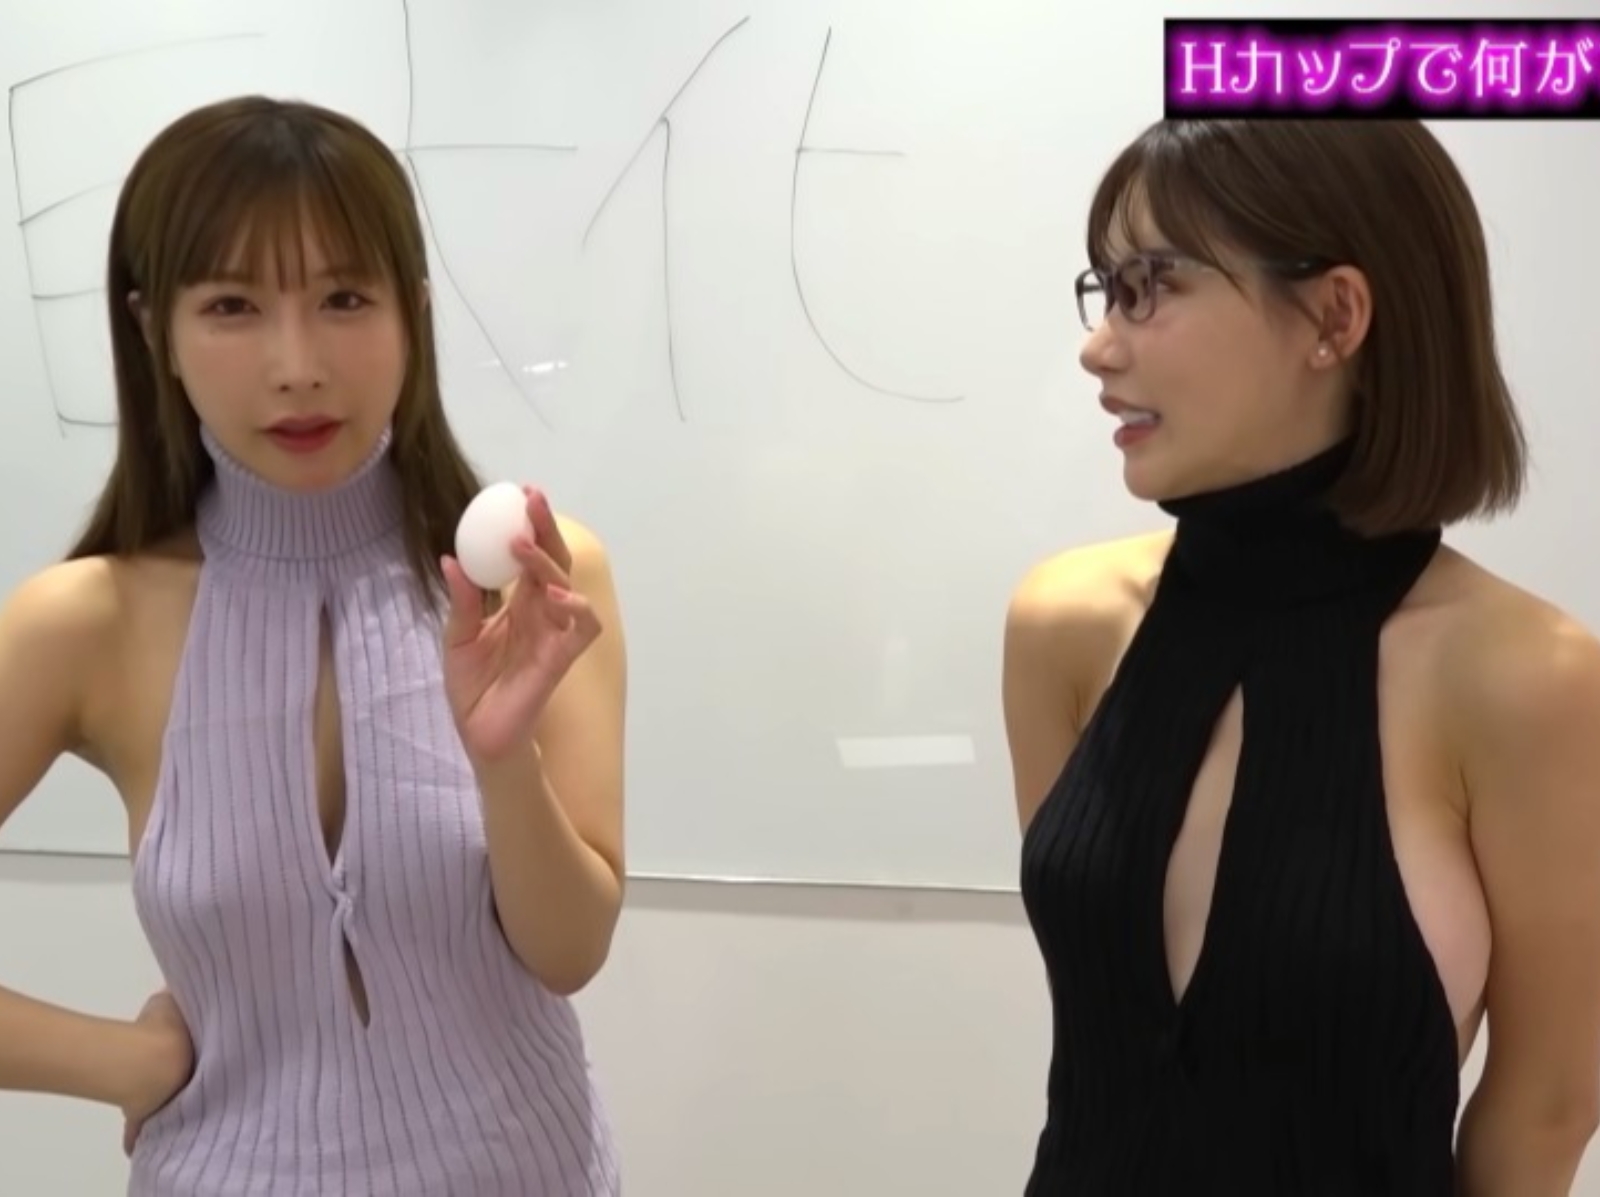 深田詠美 YouTube 邀請網紅 うんぱい 實測「H 罩杯能做什麼」，居然還可以打蛋？！